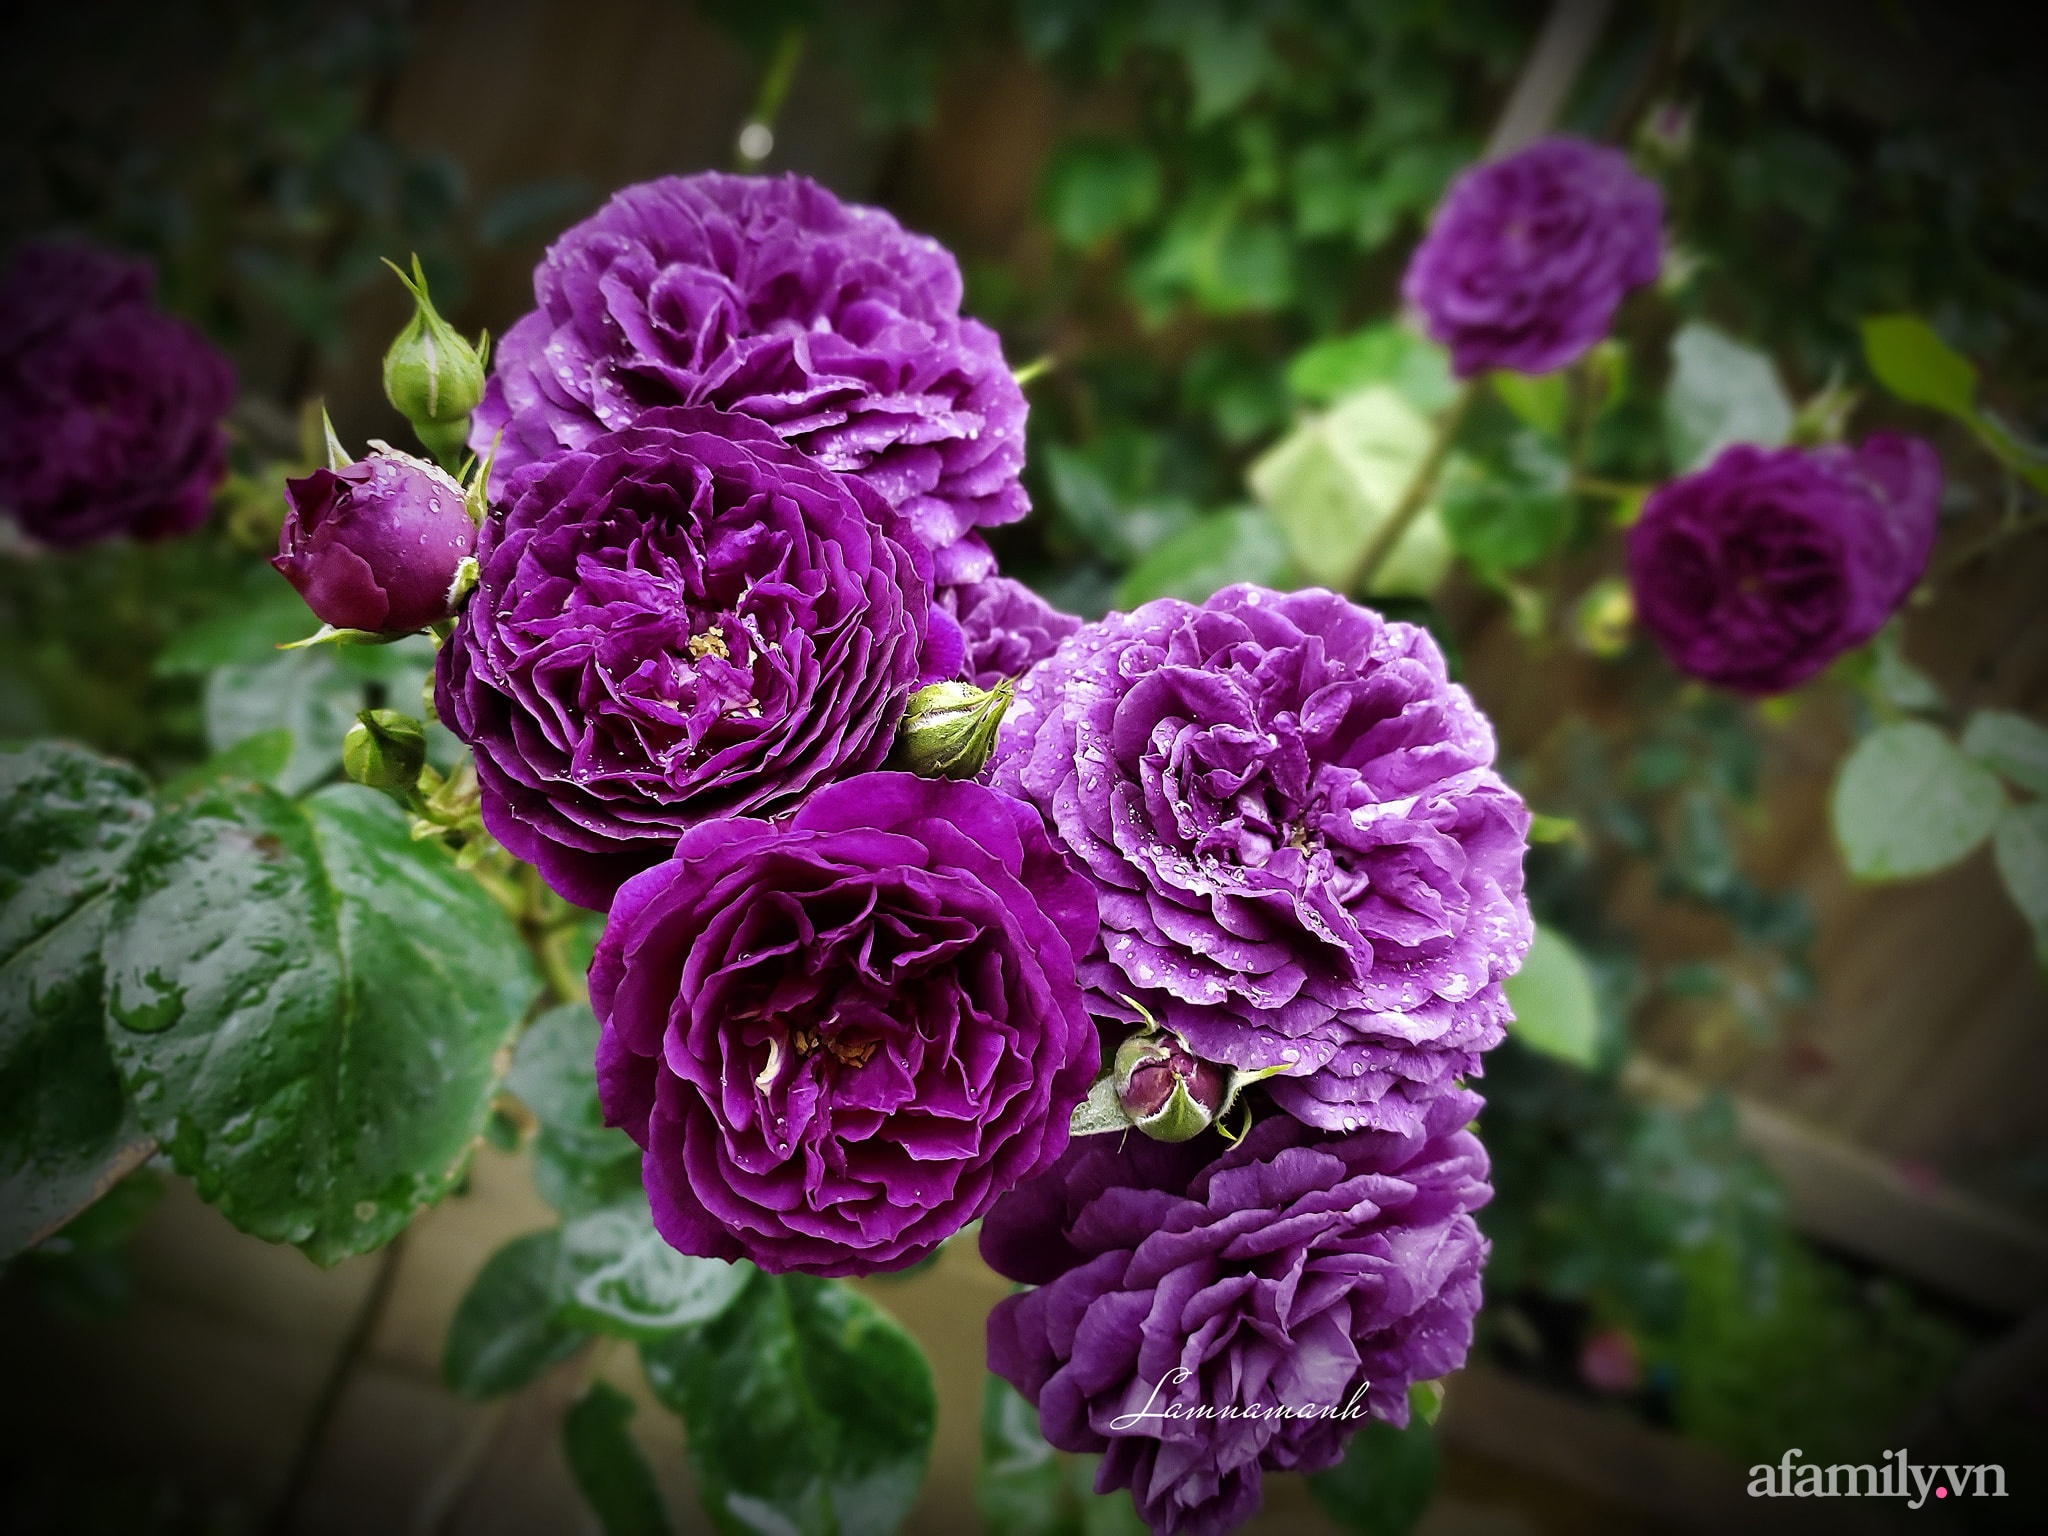 Vườn hồng 250m² ngát hương rực rỡ sắc màu đẹp như cổ tích của mẹ Việt ở Úc - Ảnh 11.